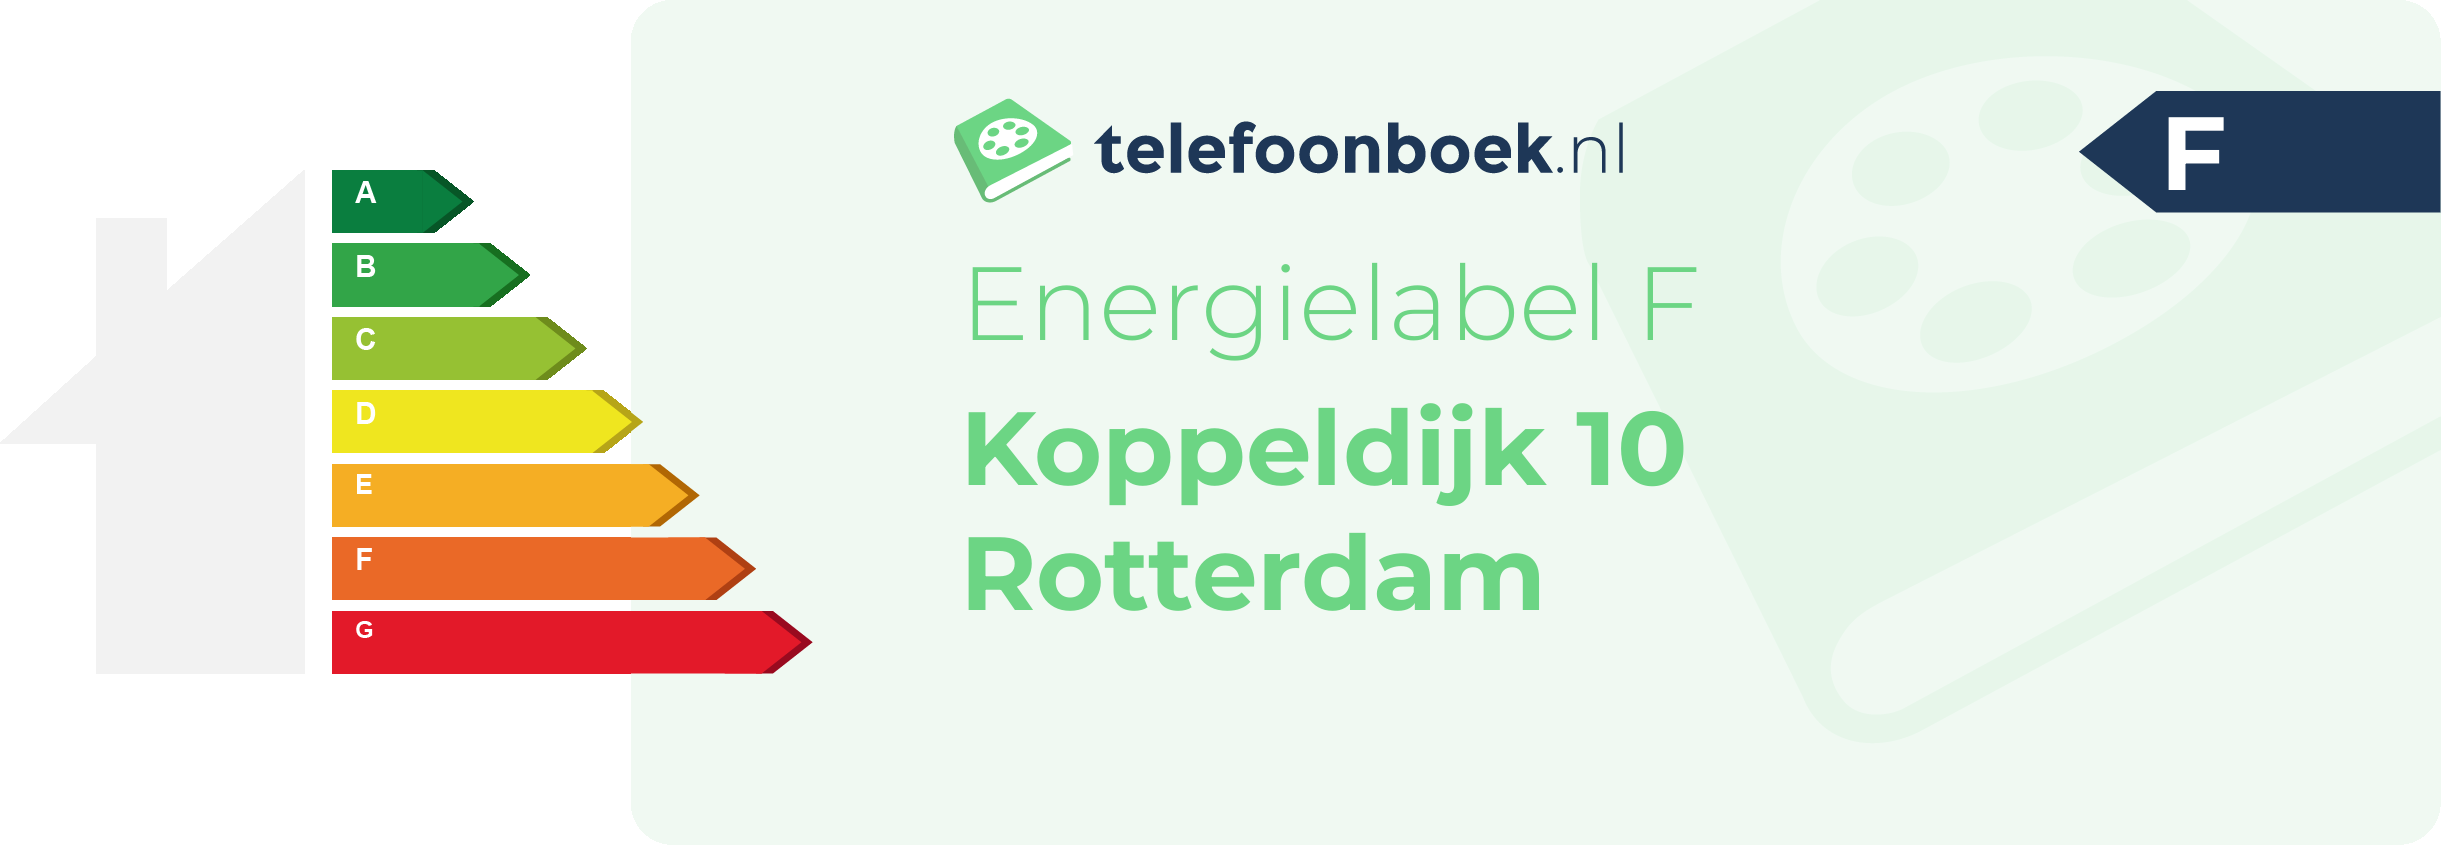 Energielabel Koppeldijk 10 Rotterdam